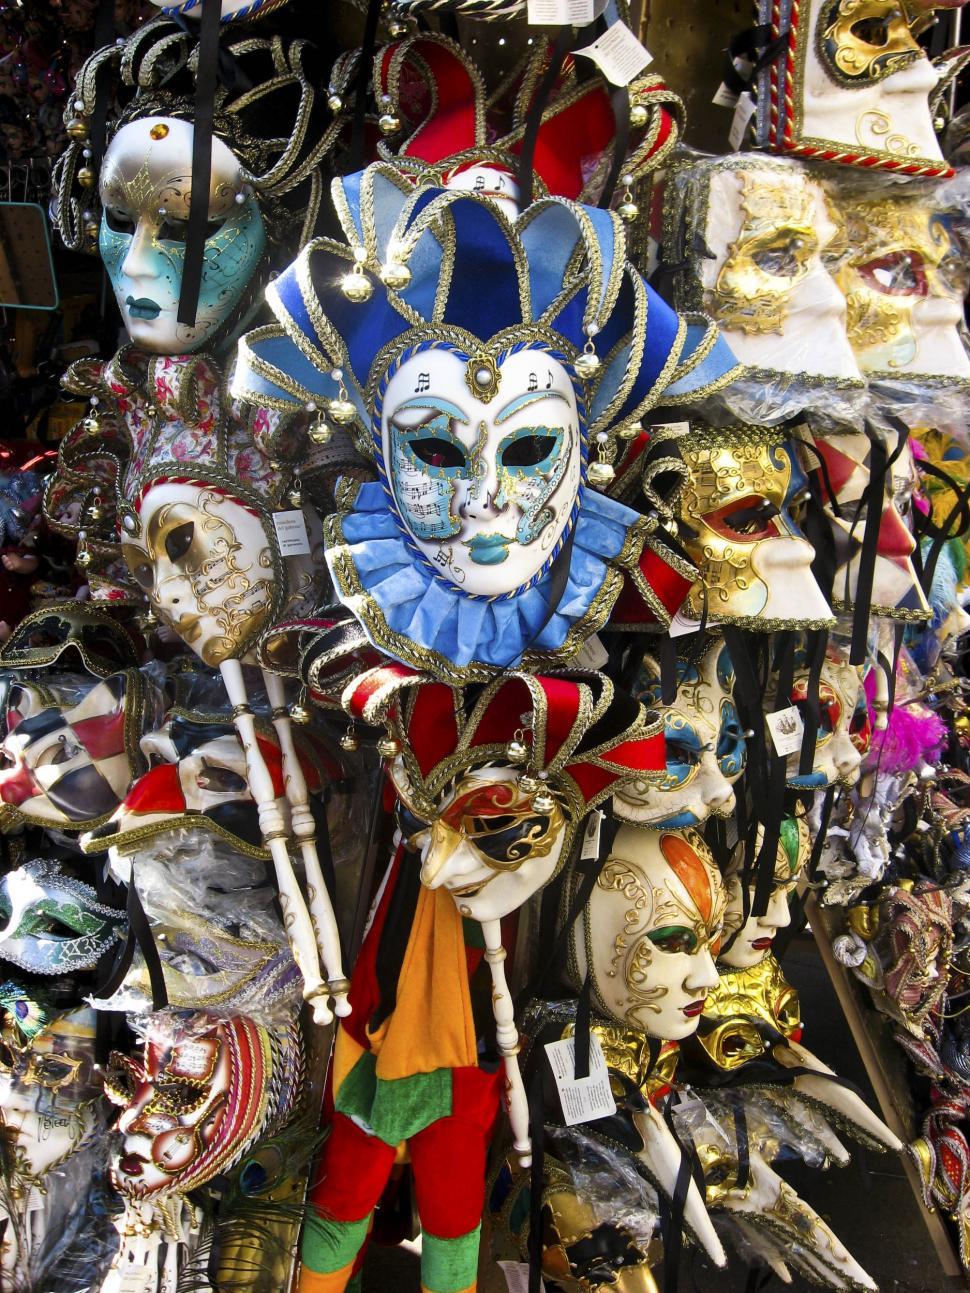 Free Image of hanging carneval masks 